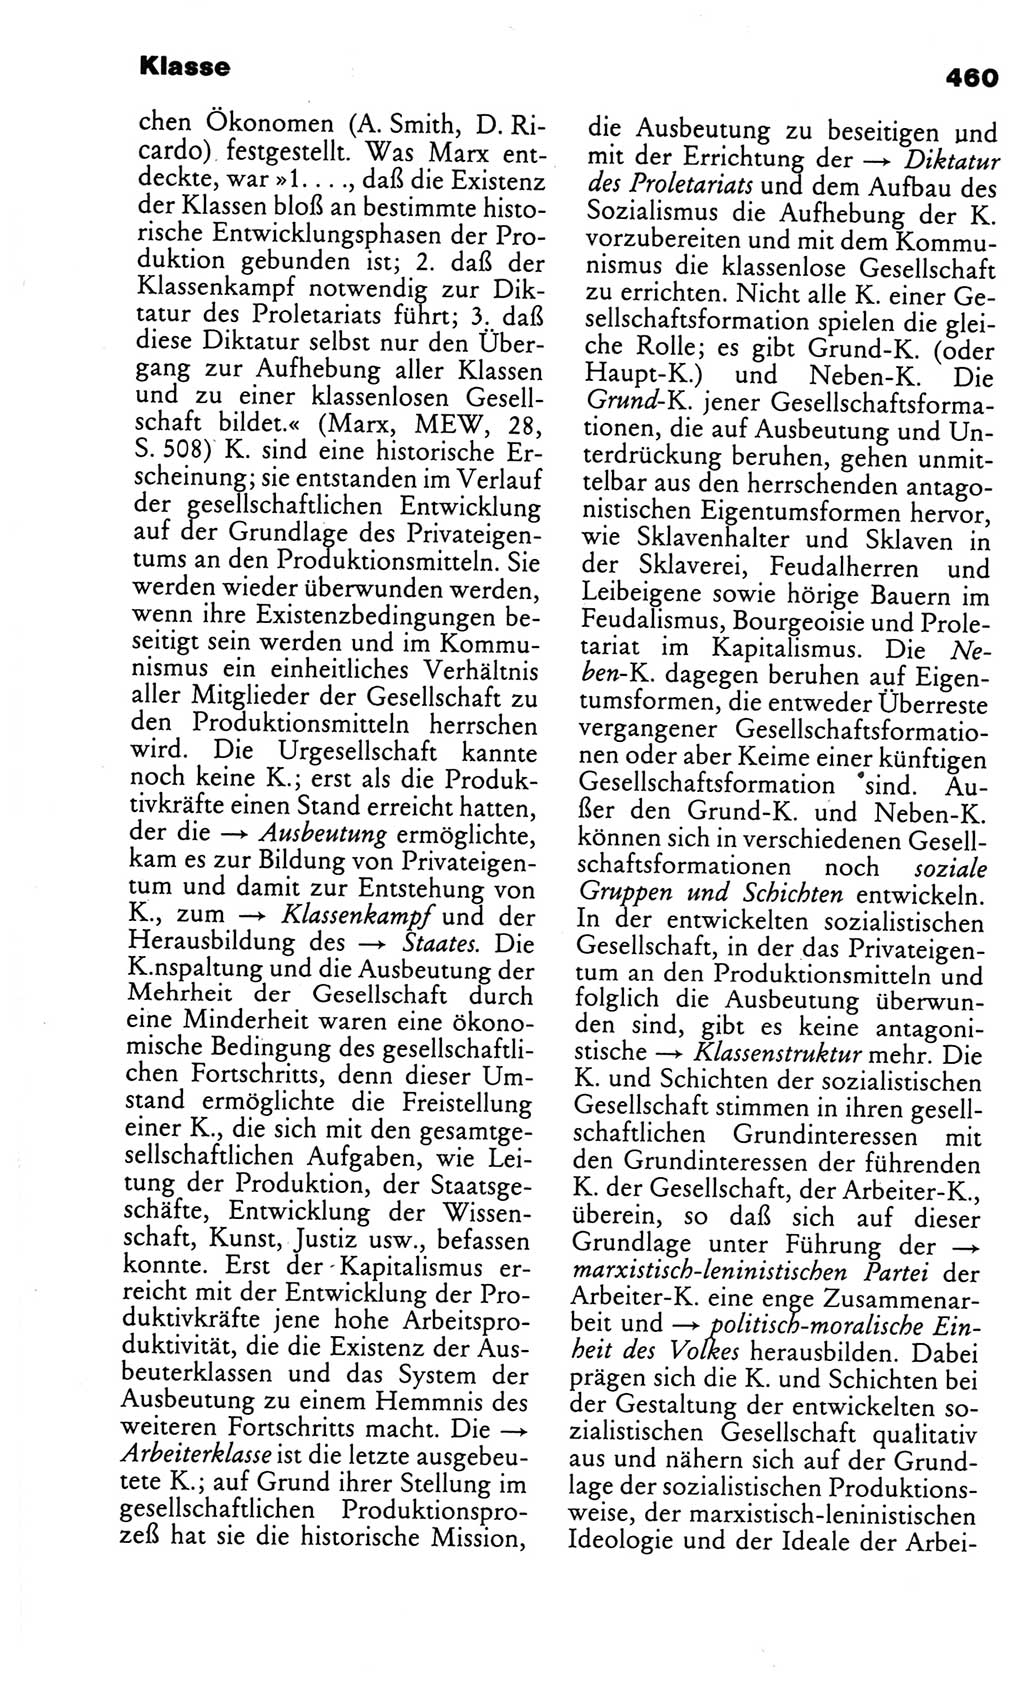 Kleines politisches Wörterbuch [Deutsche Demokratische Republik (DDR)] 1986, Seite 460 (Kl. pol. Wb. DDR 1986, S. 460)